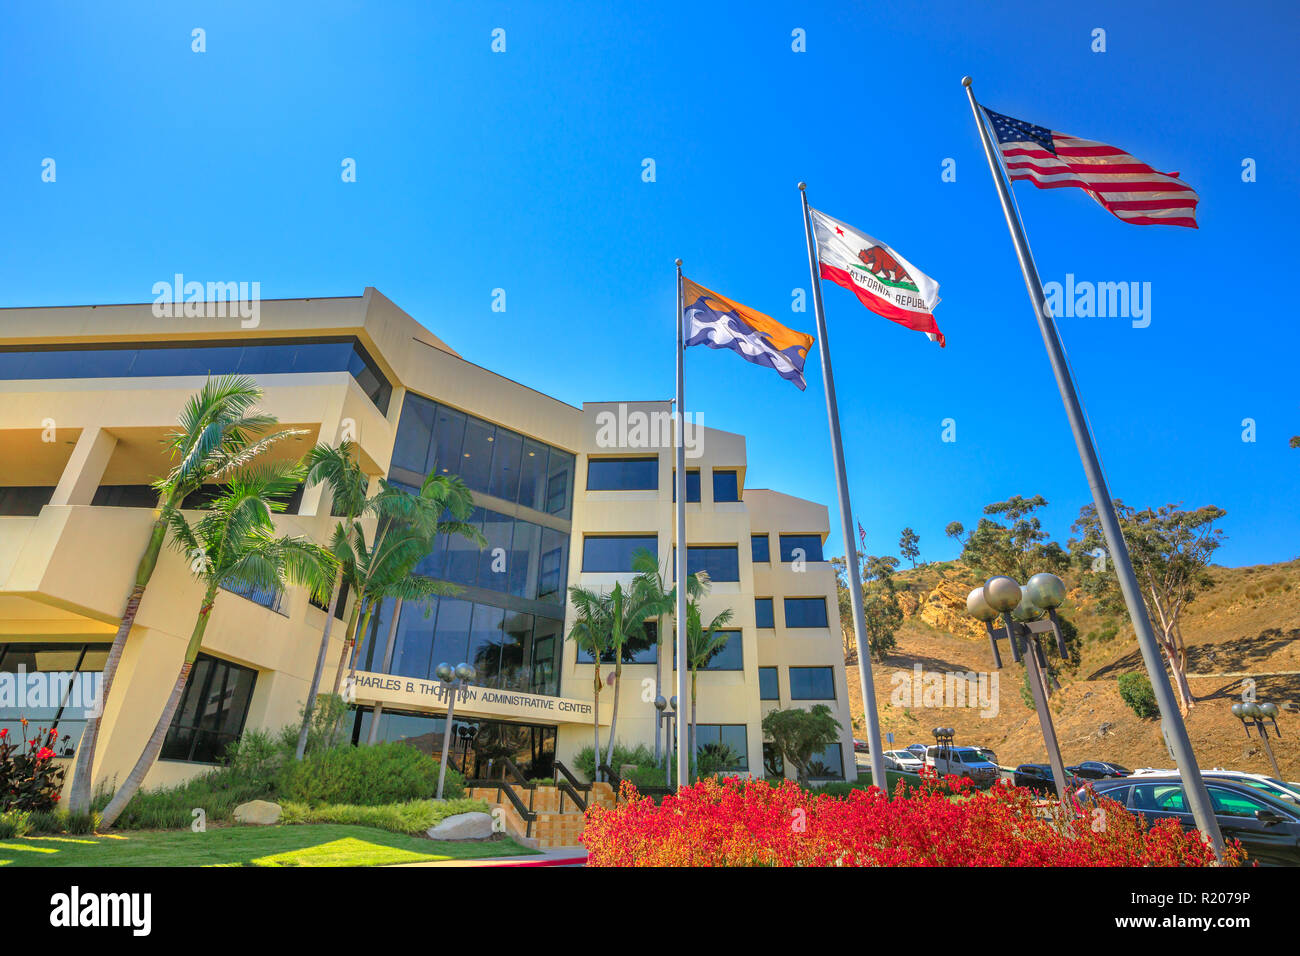 Malibu, Kalifornien, Vereinigte Staaten - 7. August 2018: Richtung und Executive Center der Pepperdine Universität mit amerikanischen, kalifornische und Malibu Flagge schwenkten. Der Hauptcampus liegt in Malibu Hills gelegen Stockfoto